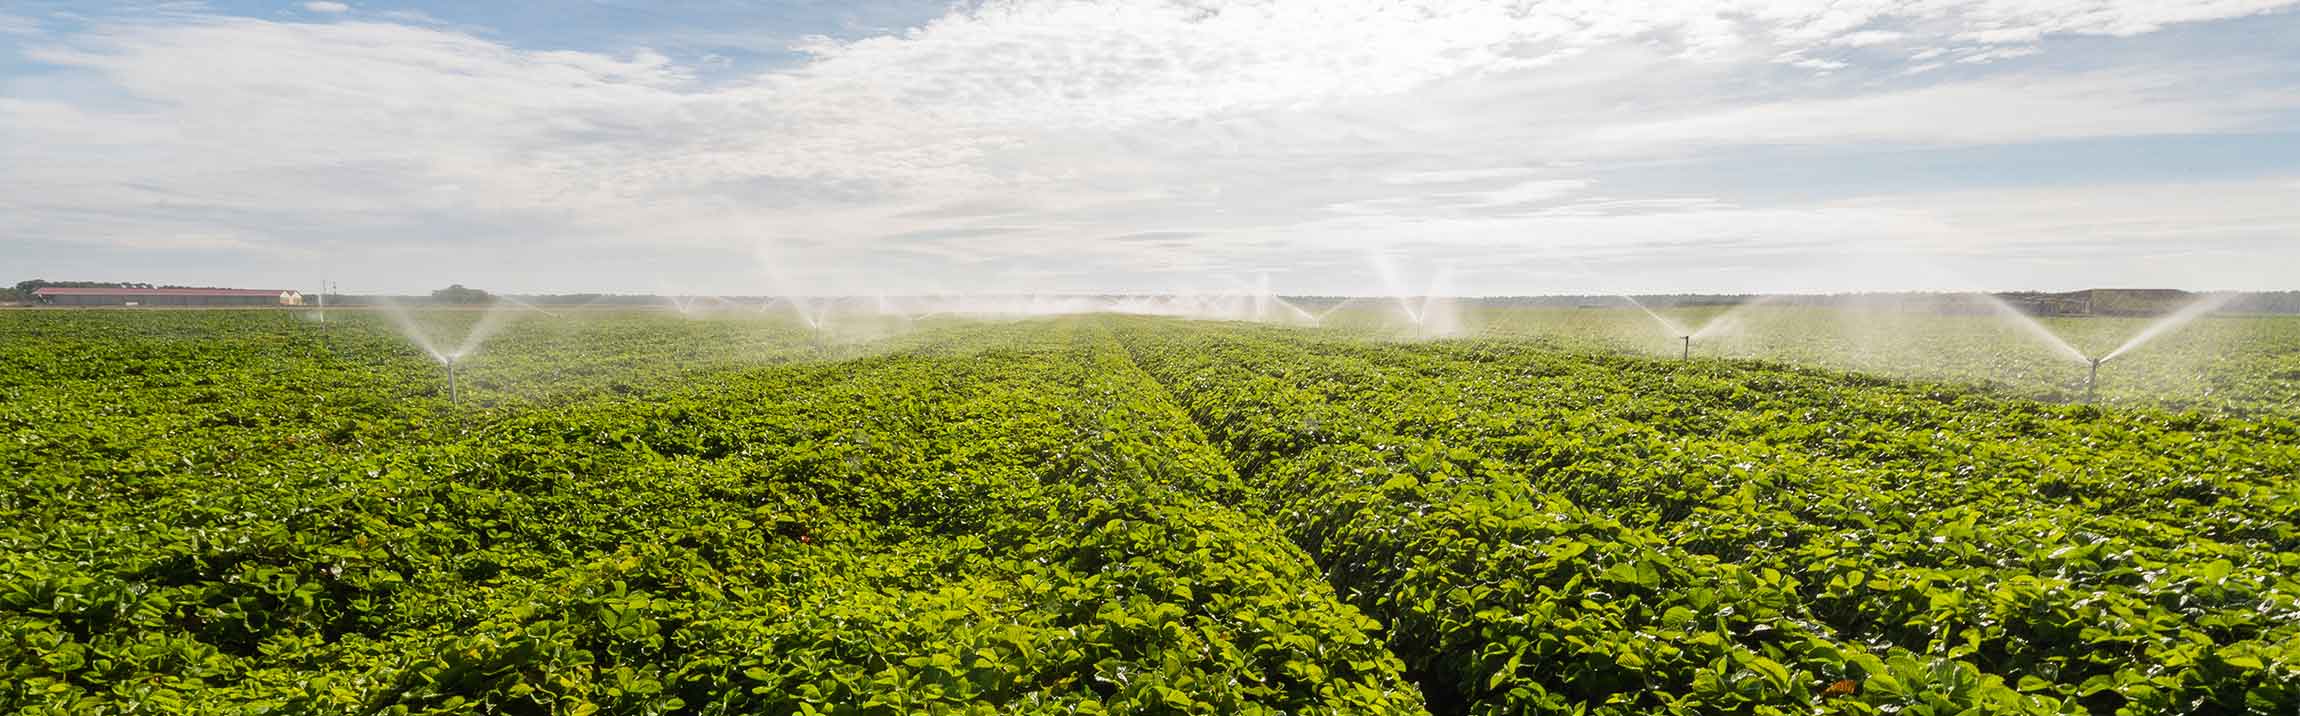 Smart Farming für mehr Produktivität und Umweltschutz in der Landwirtschaft